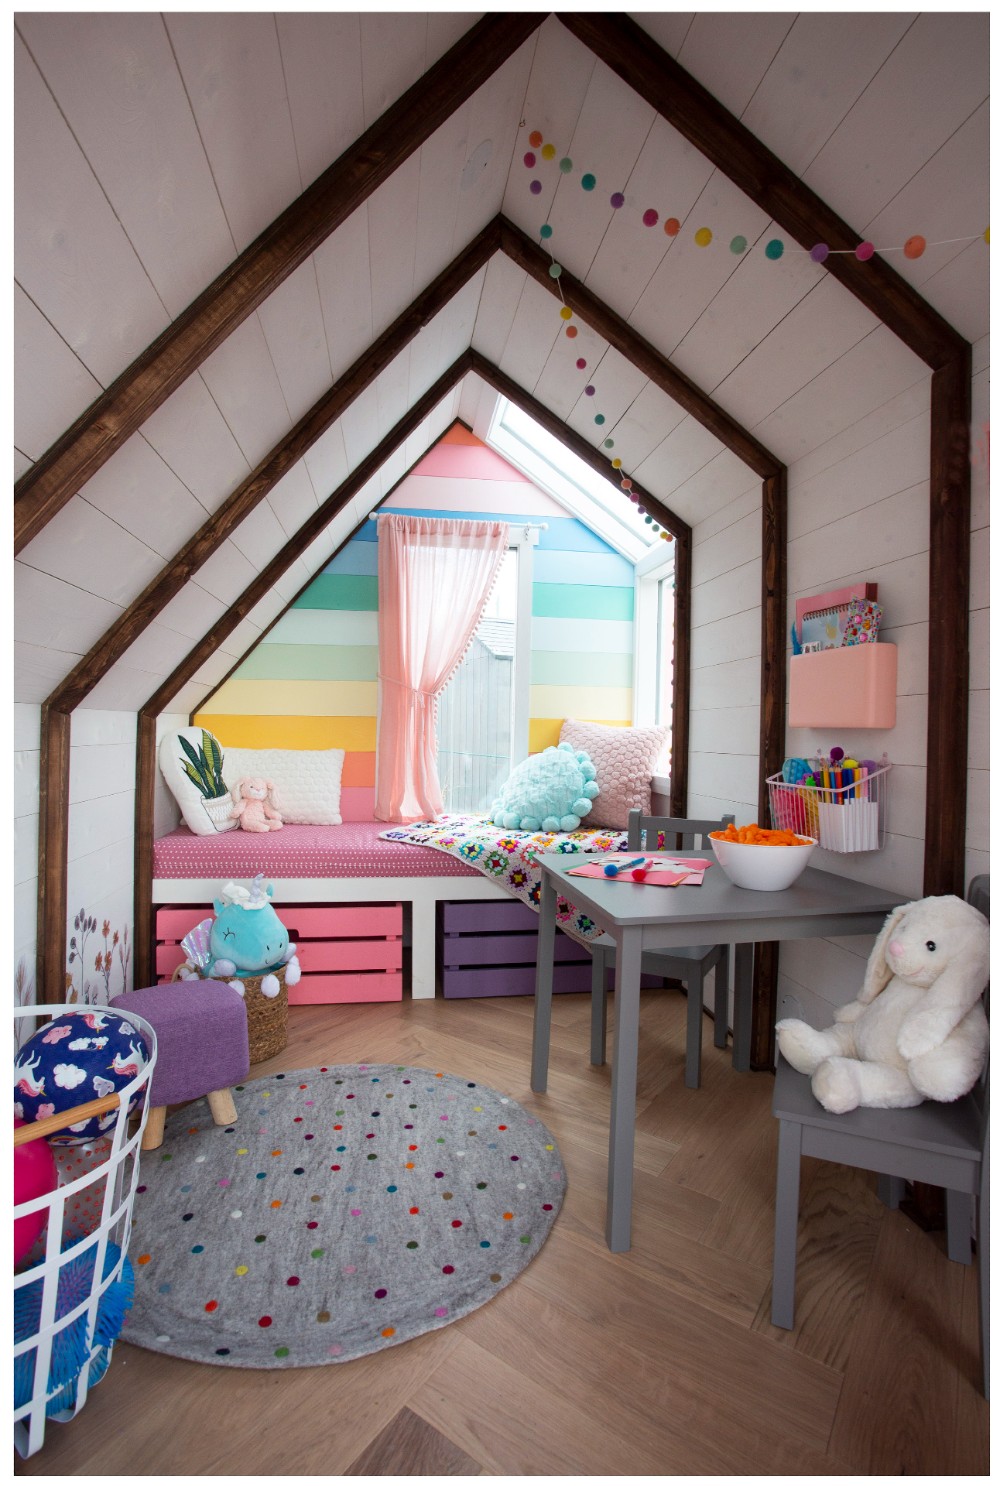 Colourful playhouse with rainbow decor